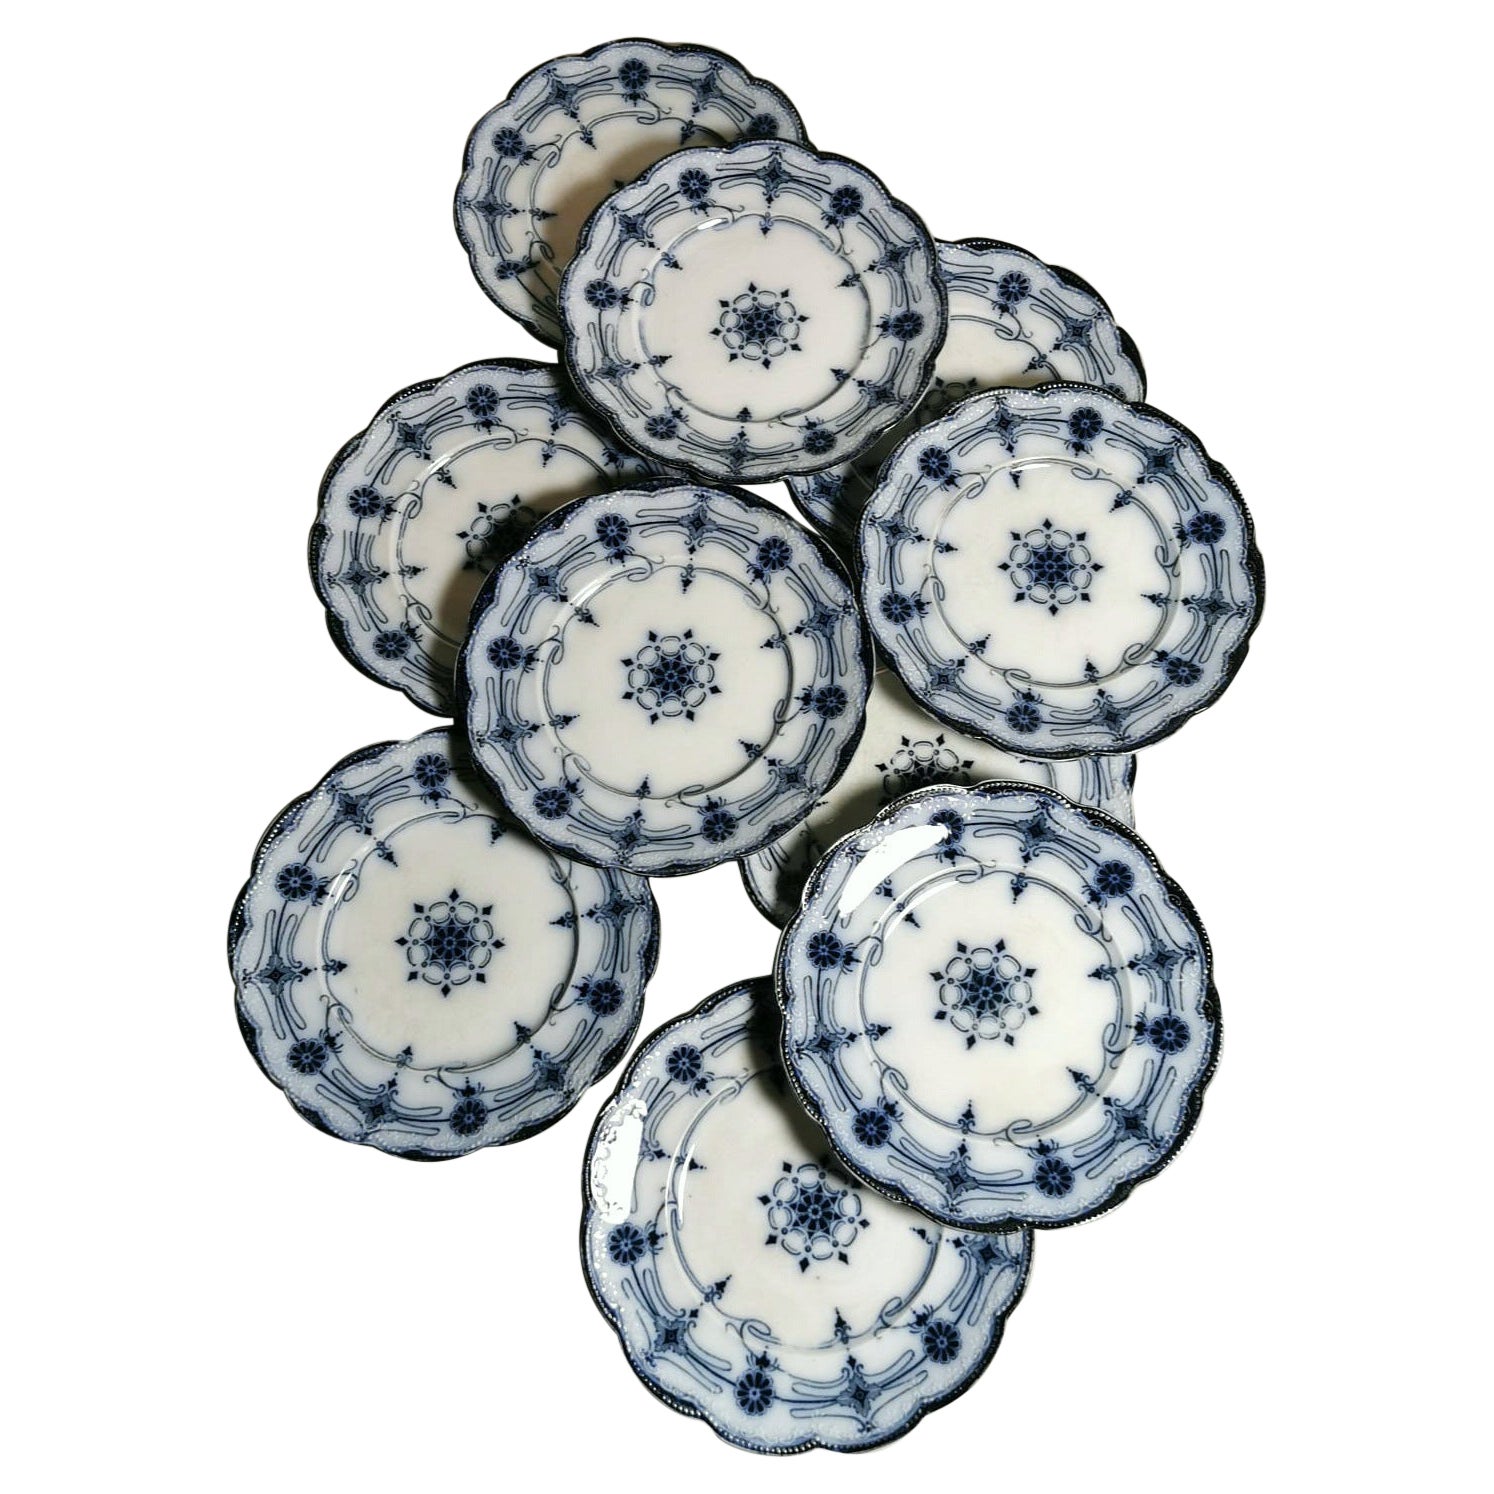 10 assiettes à dessert anglaises Wedgwood design « Burleigh » décorées de vaisselle bleue